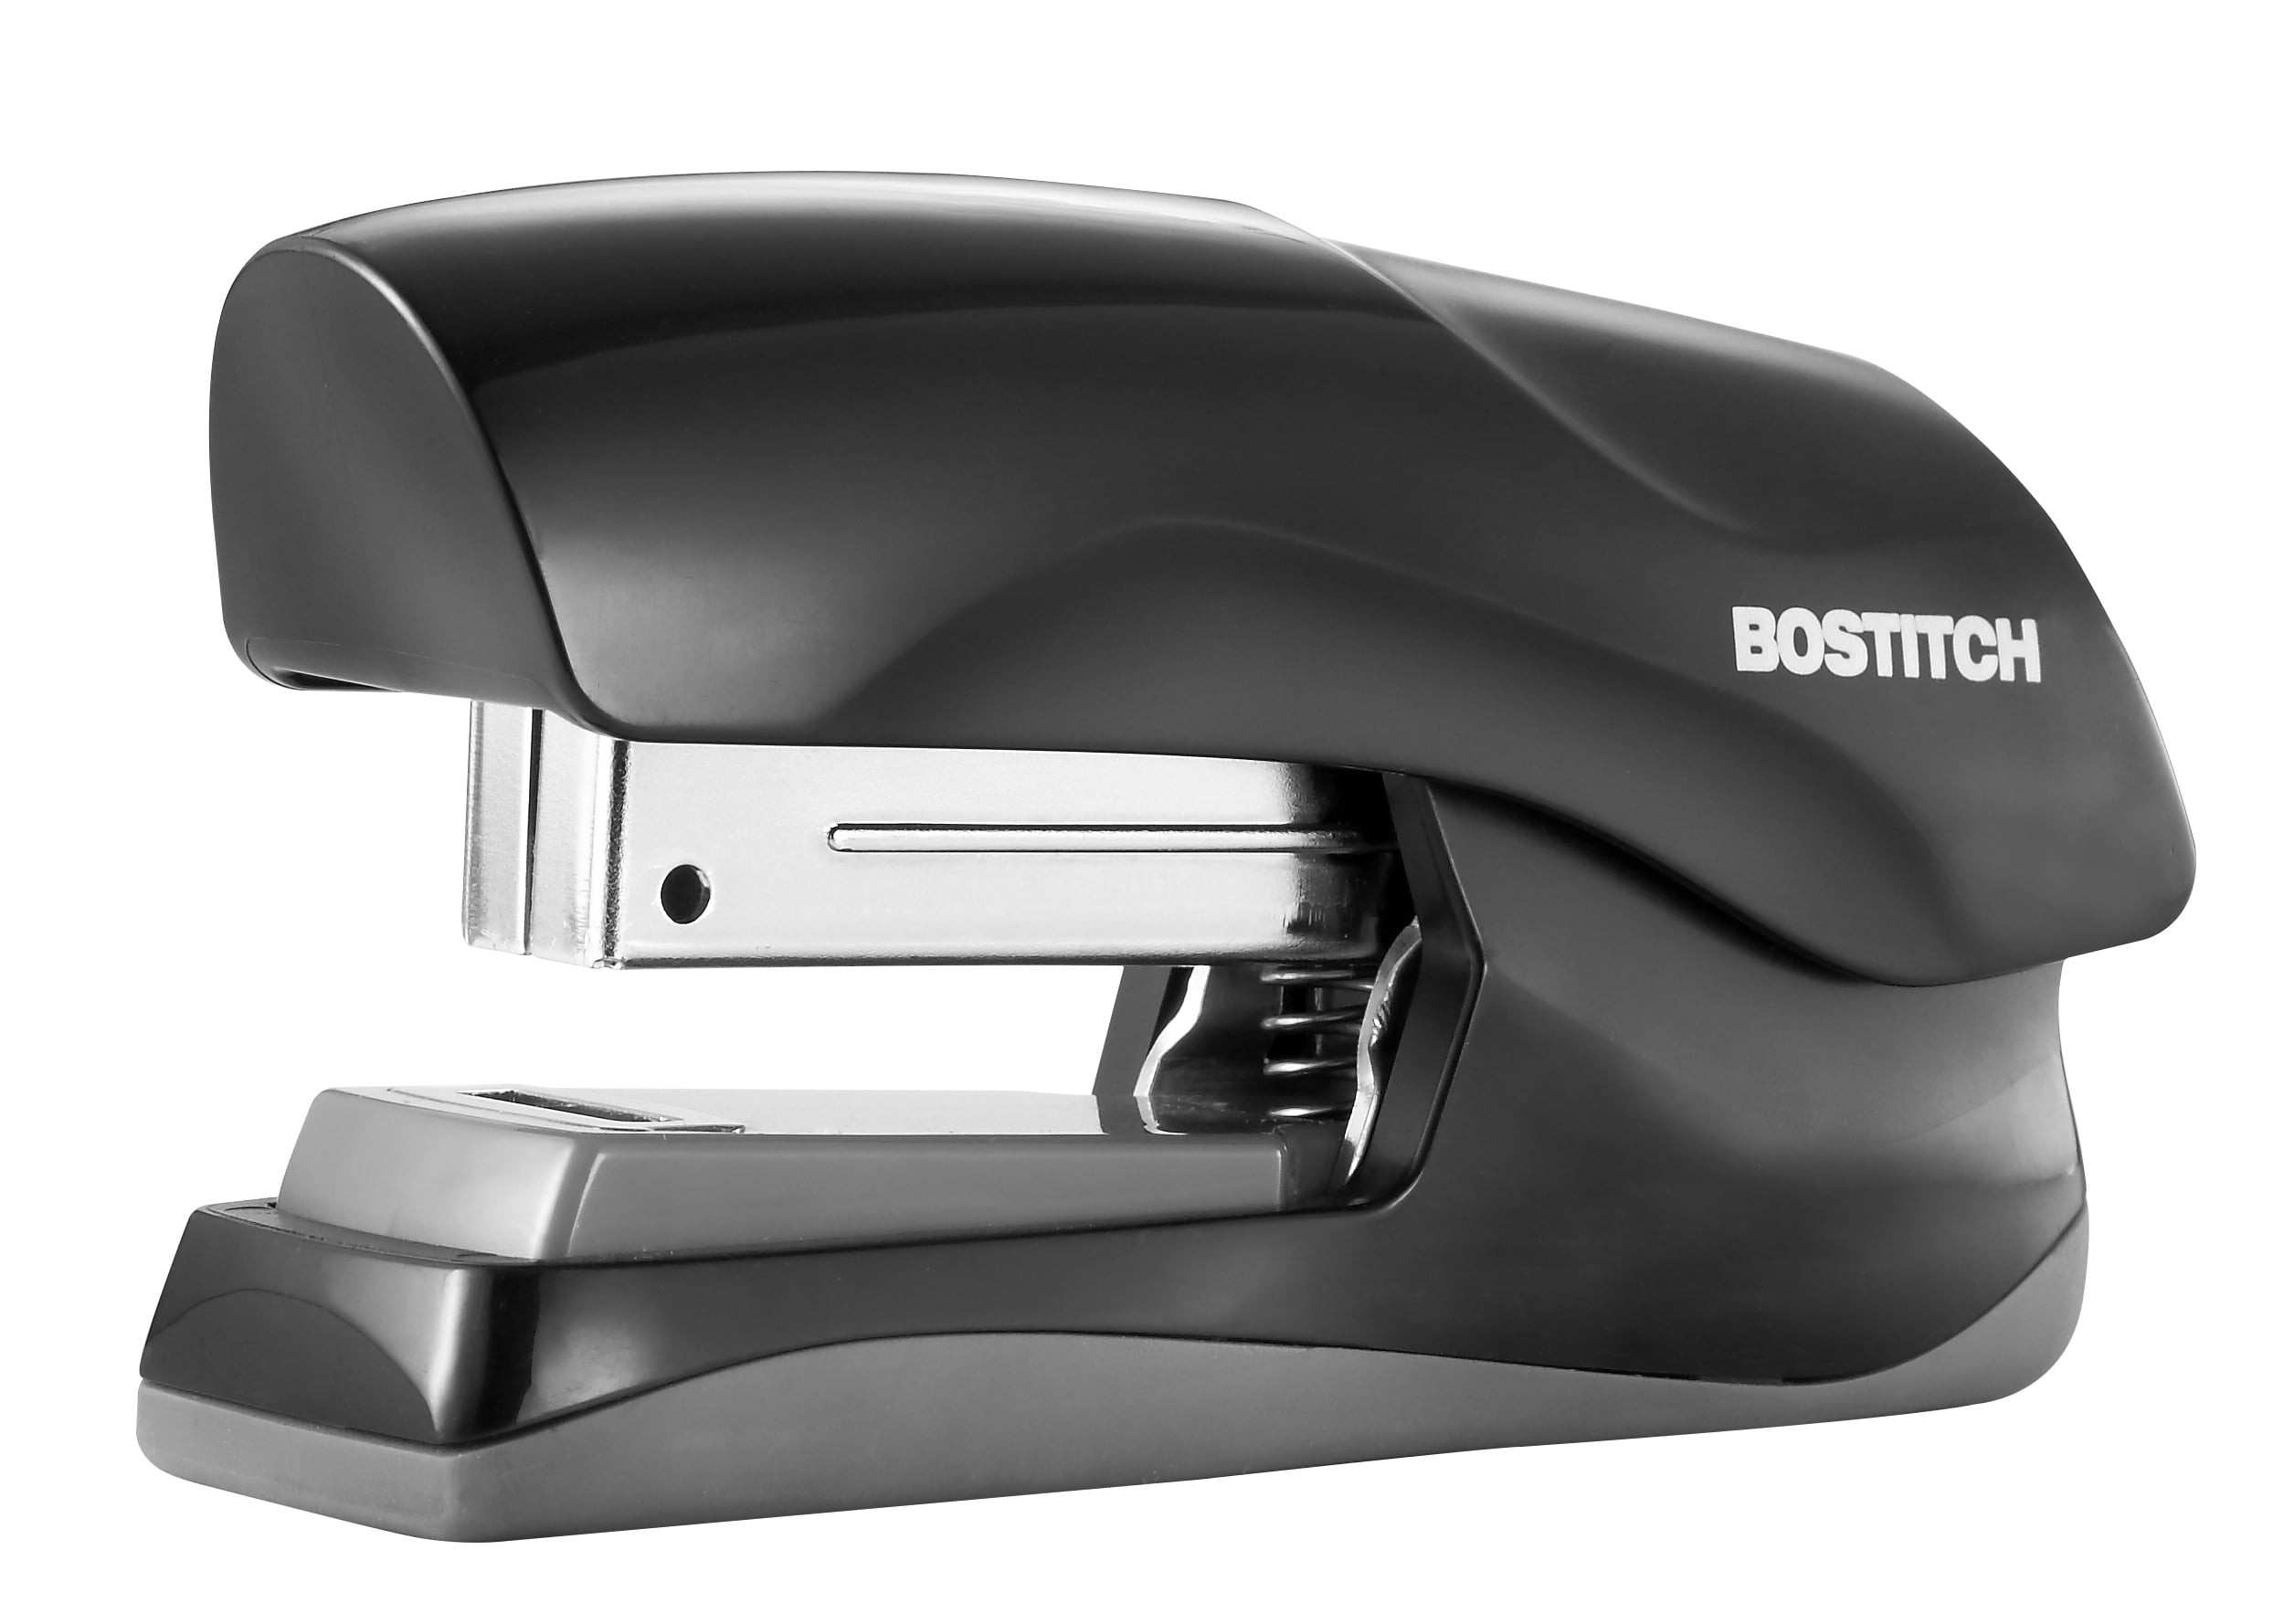 Bostitch Deluxe Hand-Held Stapler 20-Sheet Capacity Black